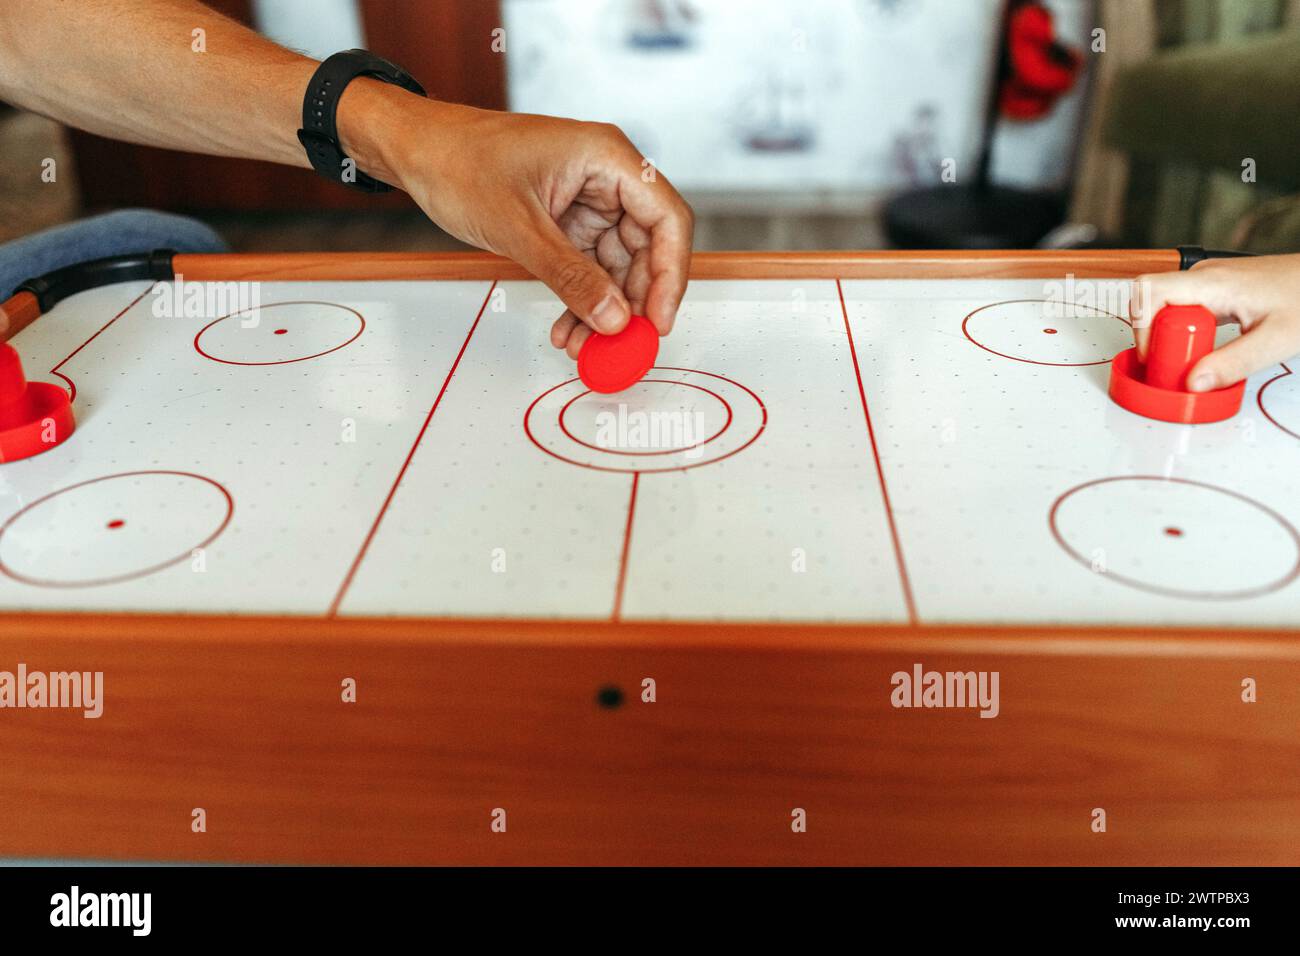 Due persone si sono impegnate in una partita di hockey da tavolo, colpendo sapientemente il disco con le palette su una superficie liscia del tavolo. Foto Stock